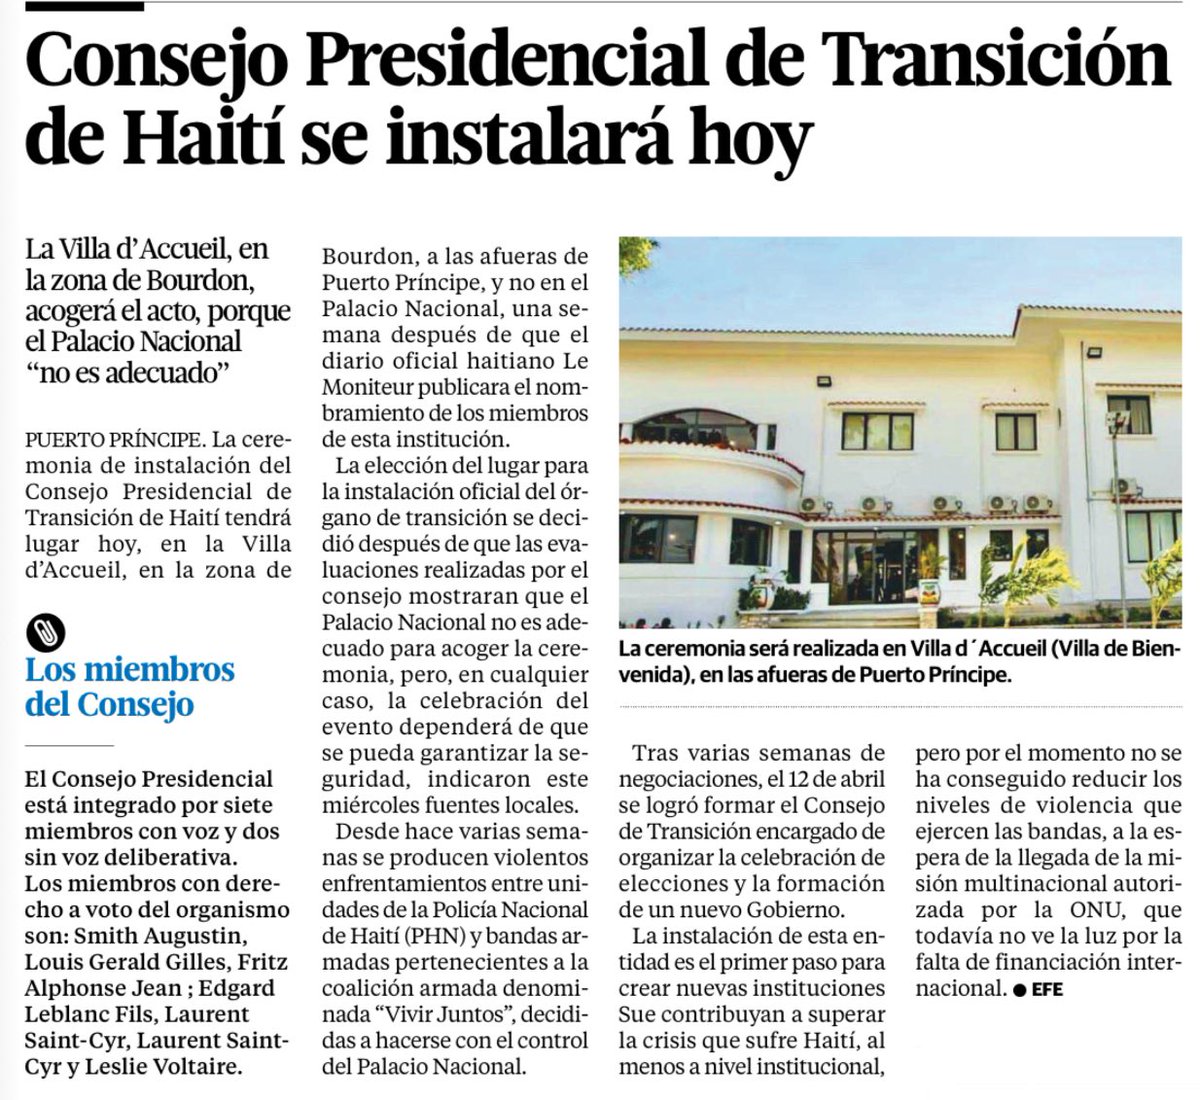 La ceremonia de instalación del Consejo Presidencial de Transición de #Haiti tendrá lugar #hoy , en Villa d'Accueil, en la zona de Bourdon, a las afueras de #PuertoPríncipe y no en el #PalacioNacional.